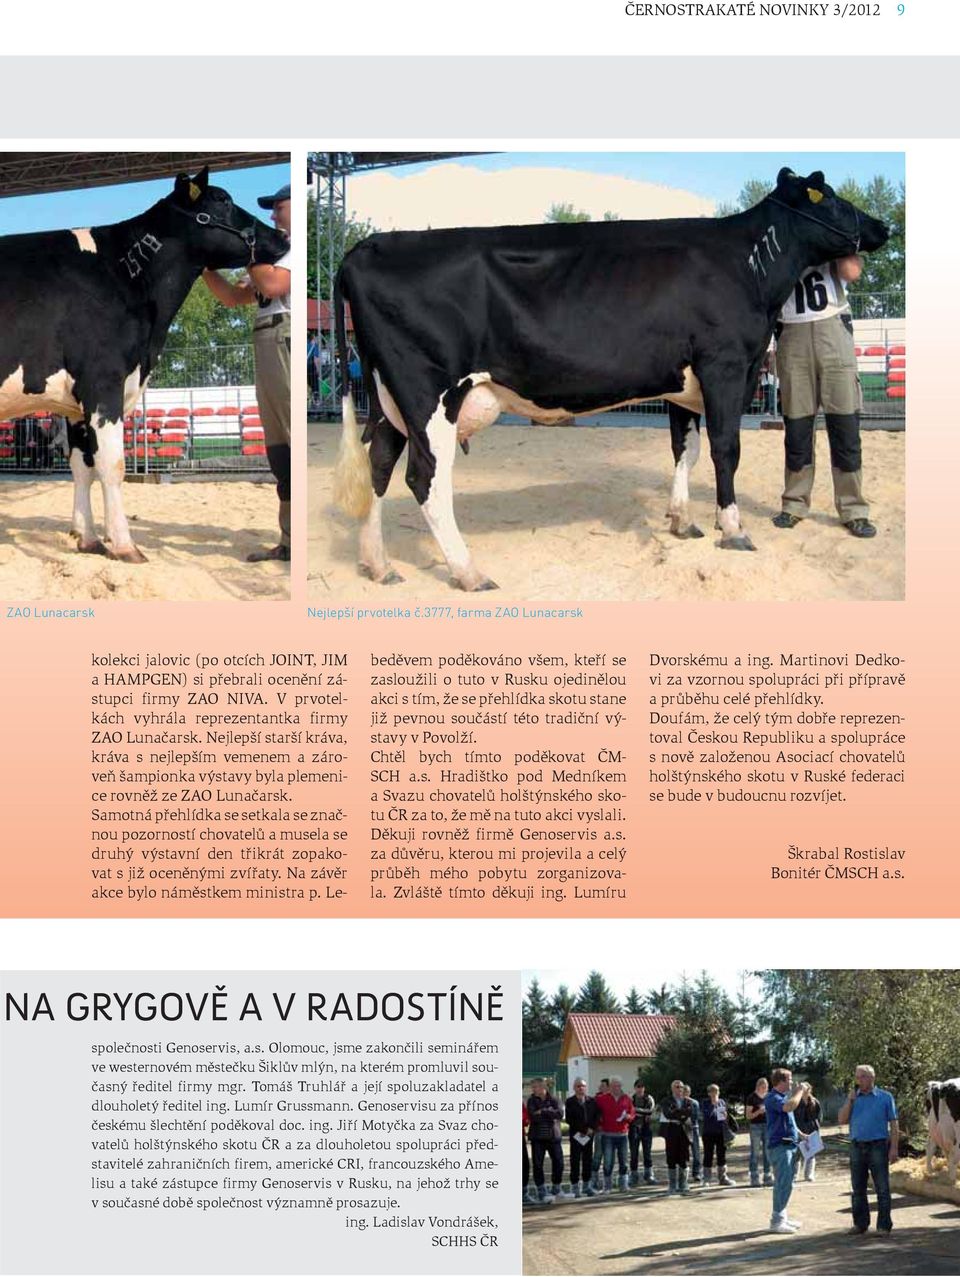 Nejlepší starší kráva, kráva s nejlepším vemenem a zároveň šampionka výstavy byla plemenice rovněž ze ZAO Lunačarsk.